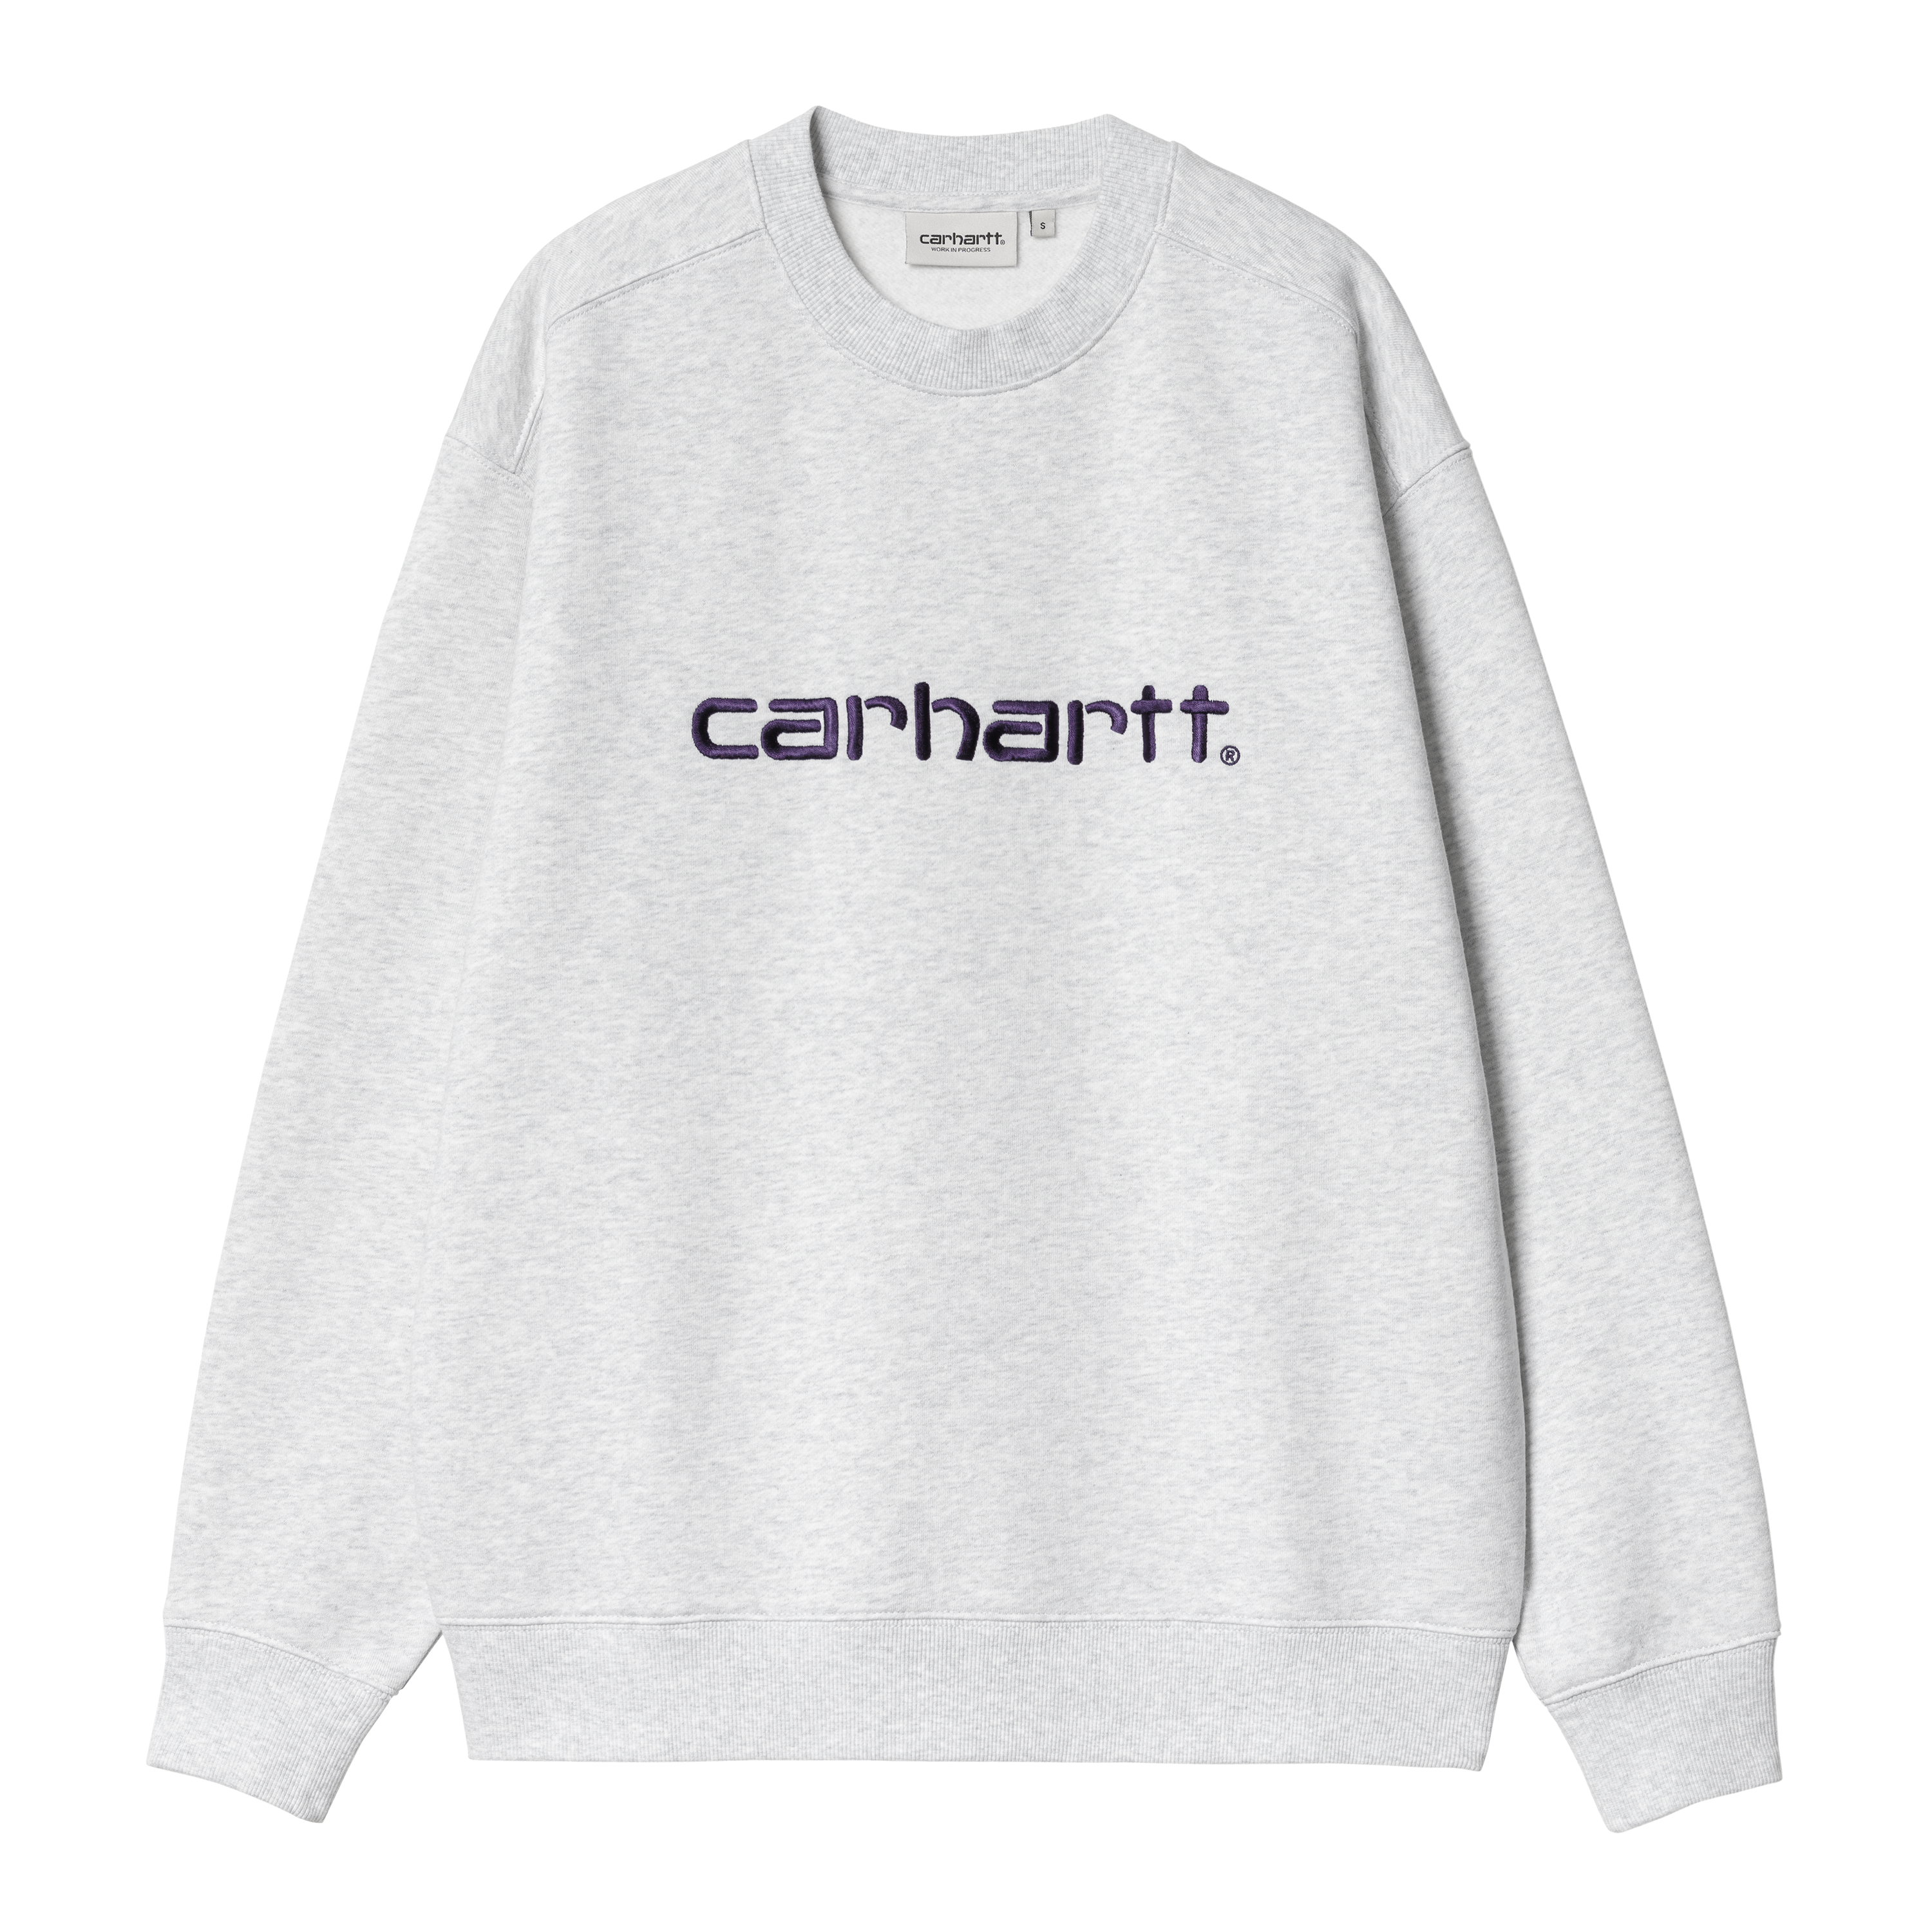 Carhartt WIP Women’s Carhartt Sweatshirt in Grau